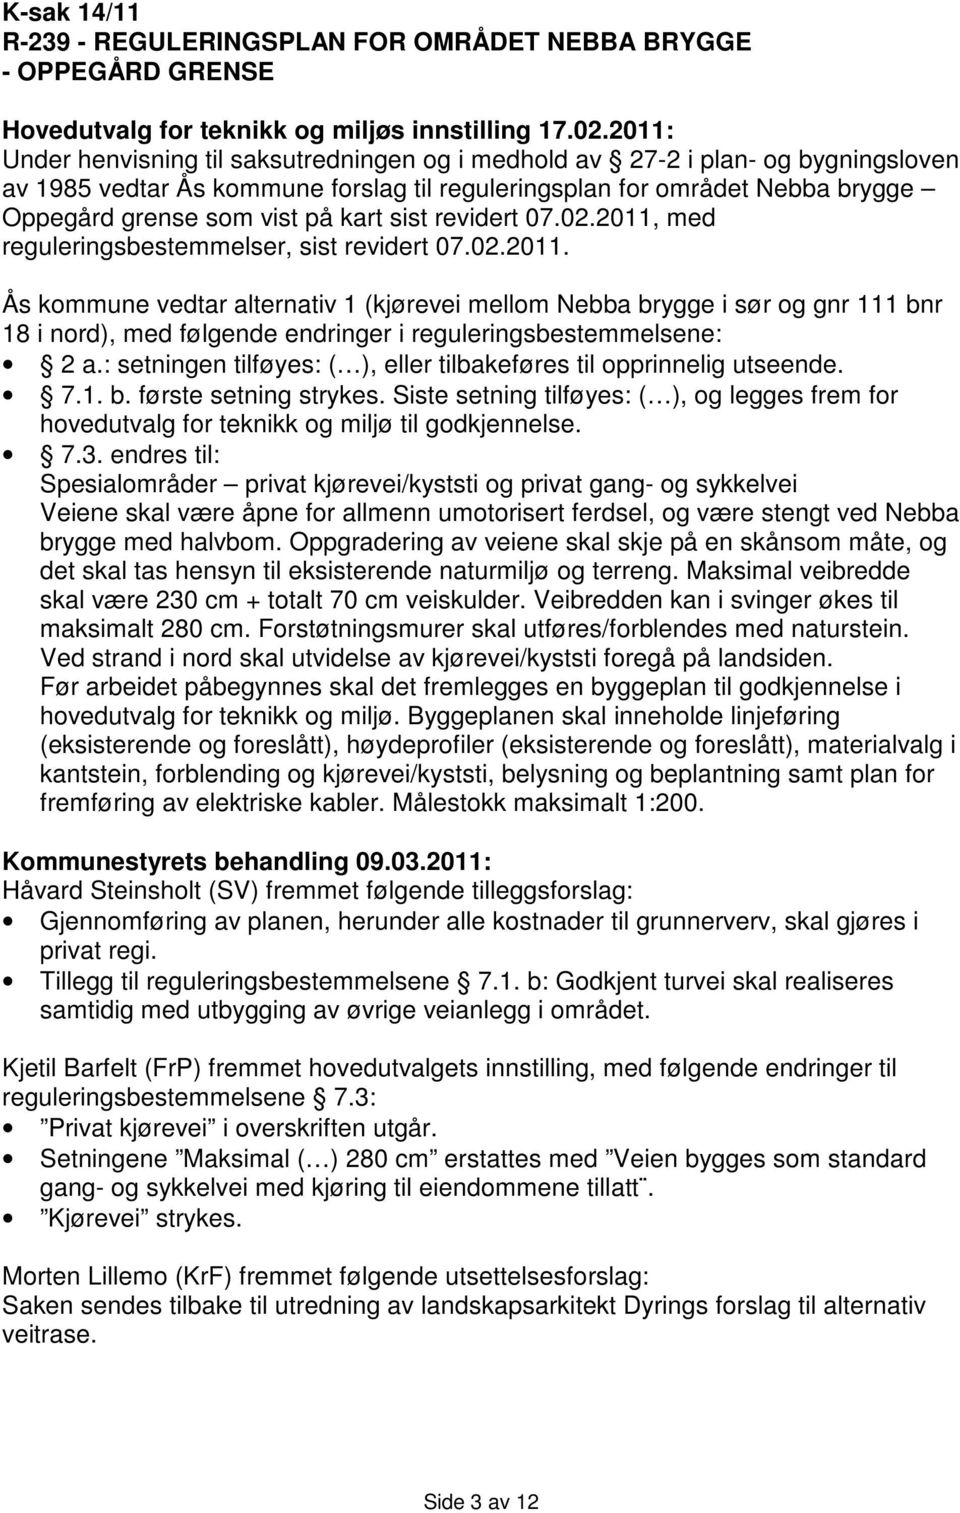 kart sist revidert 07.02.2011, med reguleringsbestemmelser, sist revidert 07.02.2011. Ås kommune vedtar alternativ 1 (kjørevei mellom Nebba brygge i sør og gnr 111 bnr 18 i nord), med følgende endringer i reguleringsbestemmelsene: 2 a.